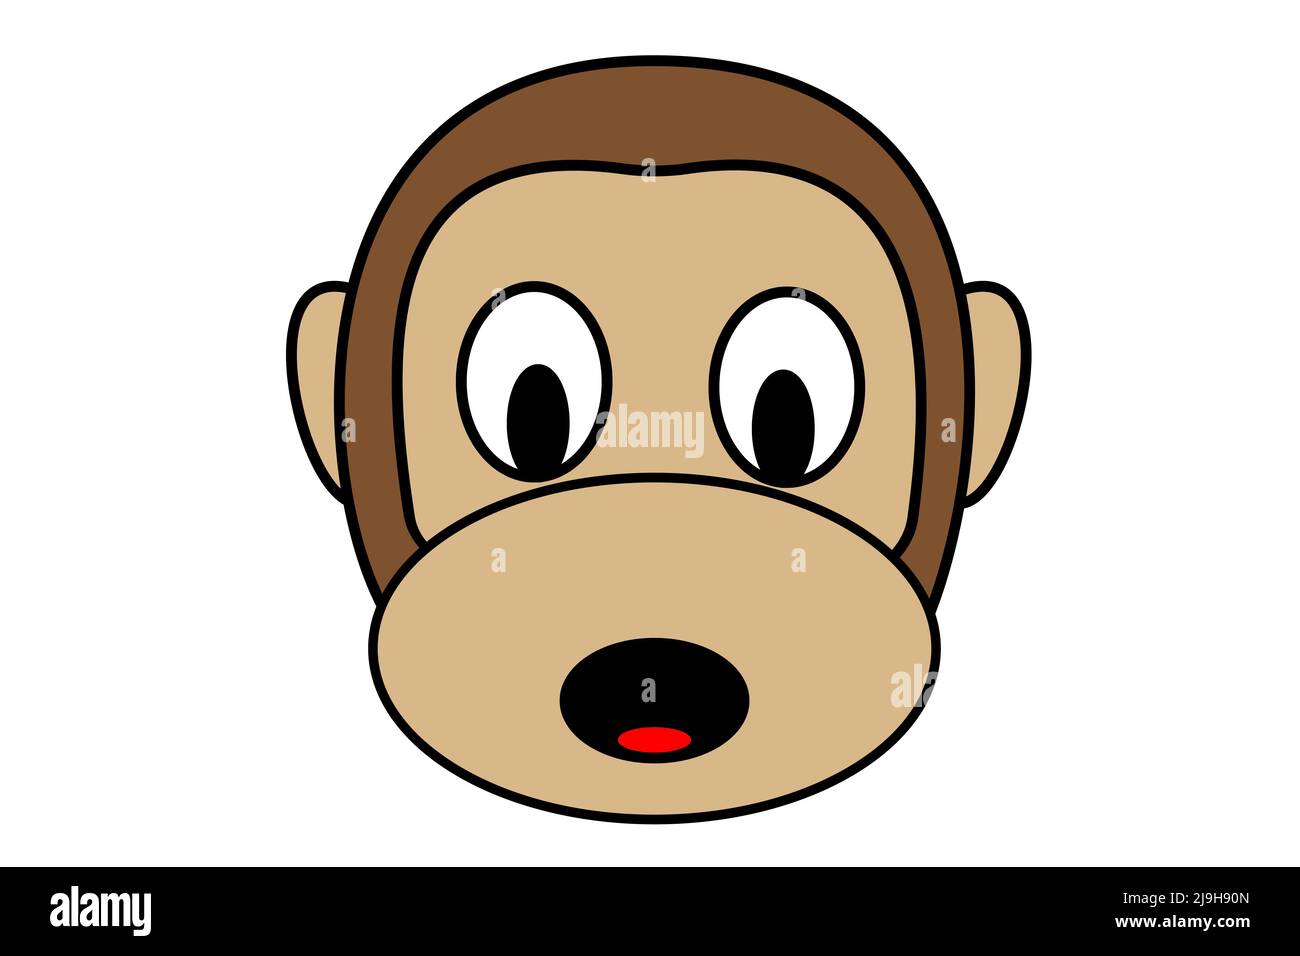 Scimmia. Disegno illustrativo del volto di una scimmia di colore marrone. Design Monkeypox. Vaiolo. Illustrazione. Monkeypox. Foto Stock